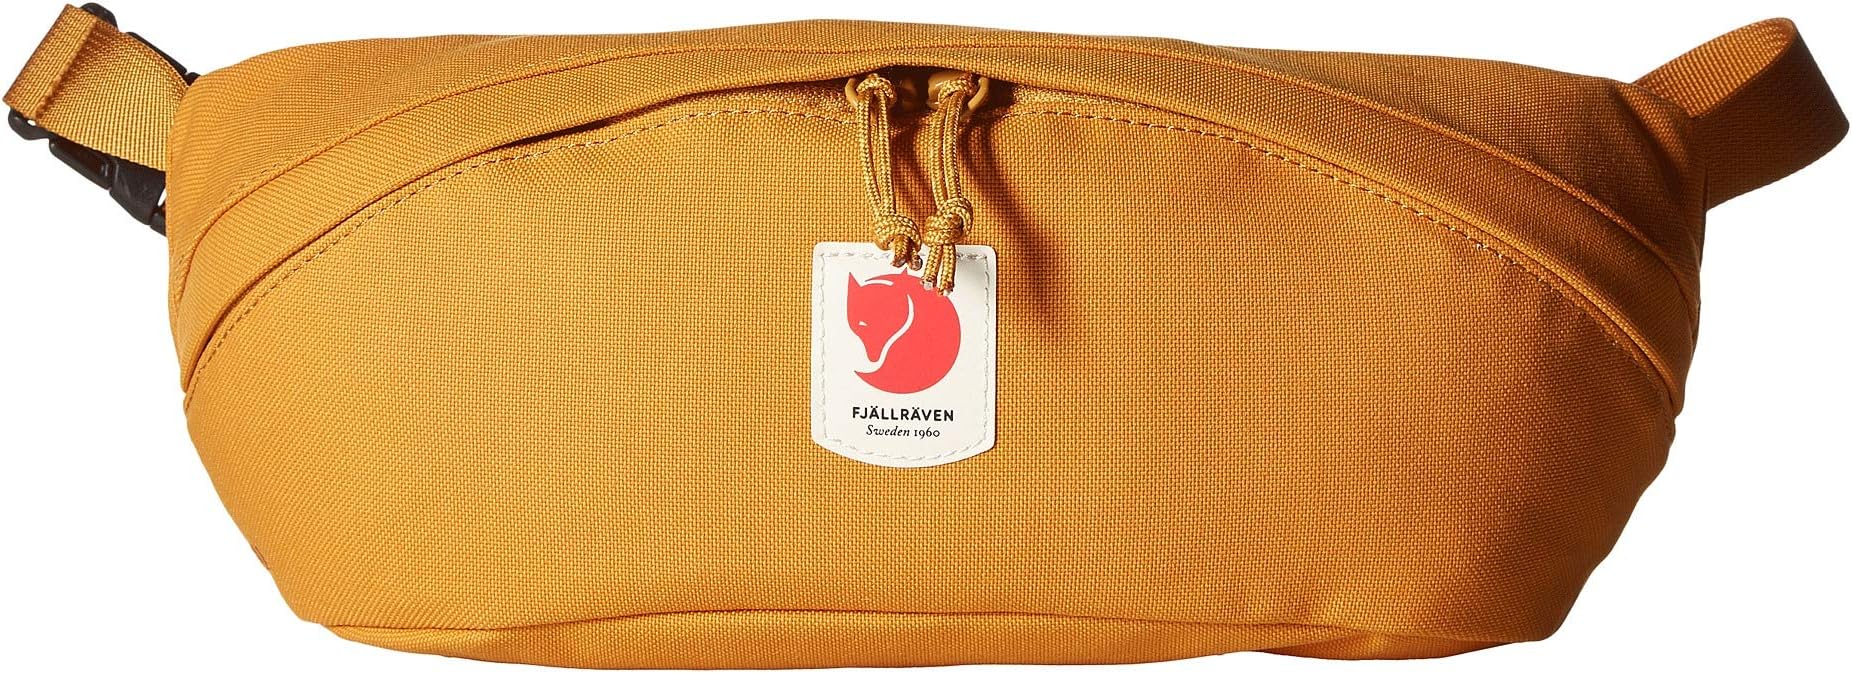 Сумка-рюкзак Ulvö среднего размера Fjällräven, цвет Red Gold большая поясная сумка ulvö fjällräven цвет red gold